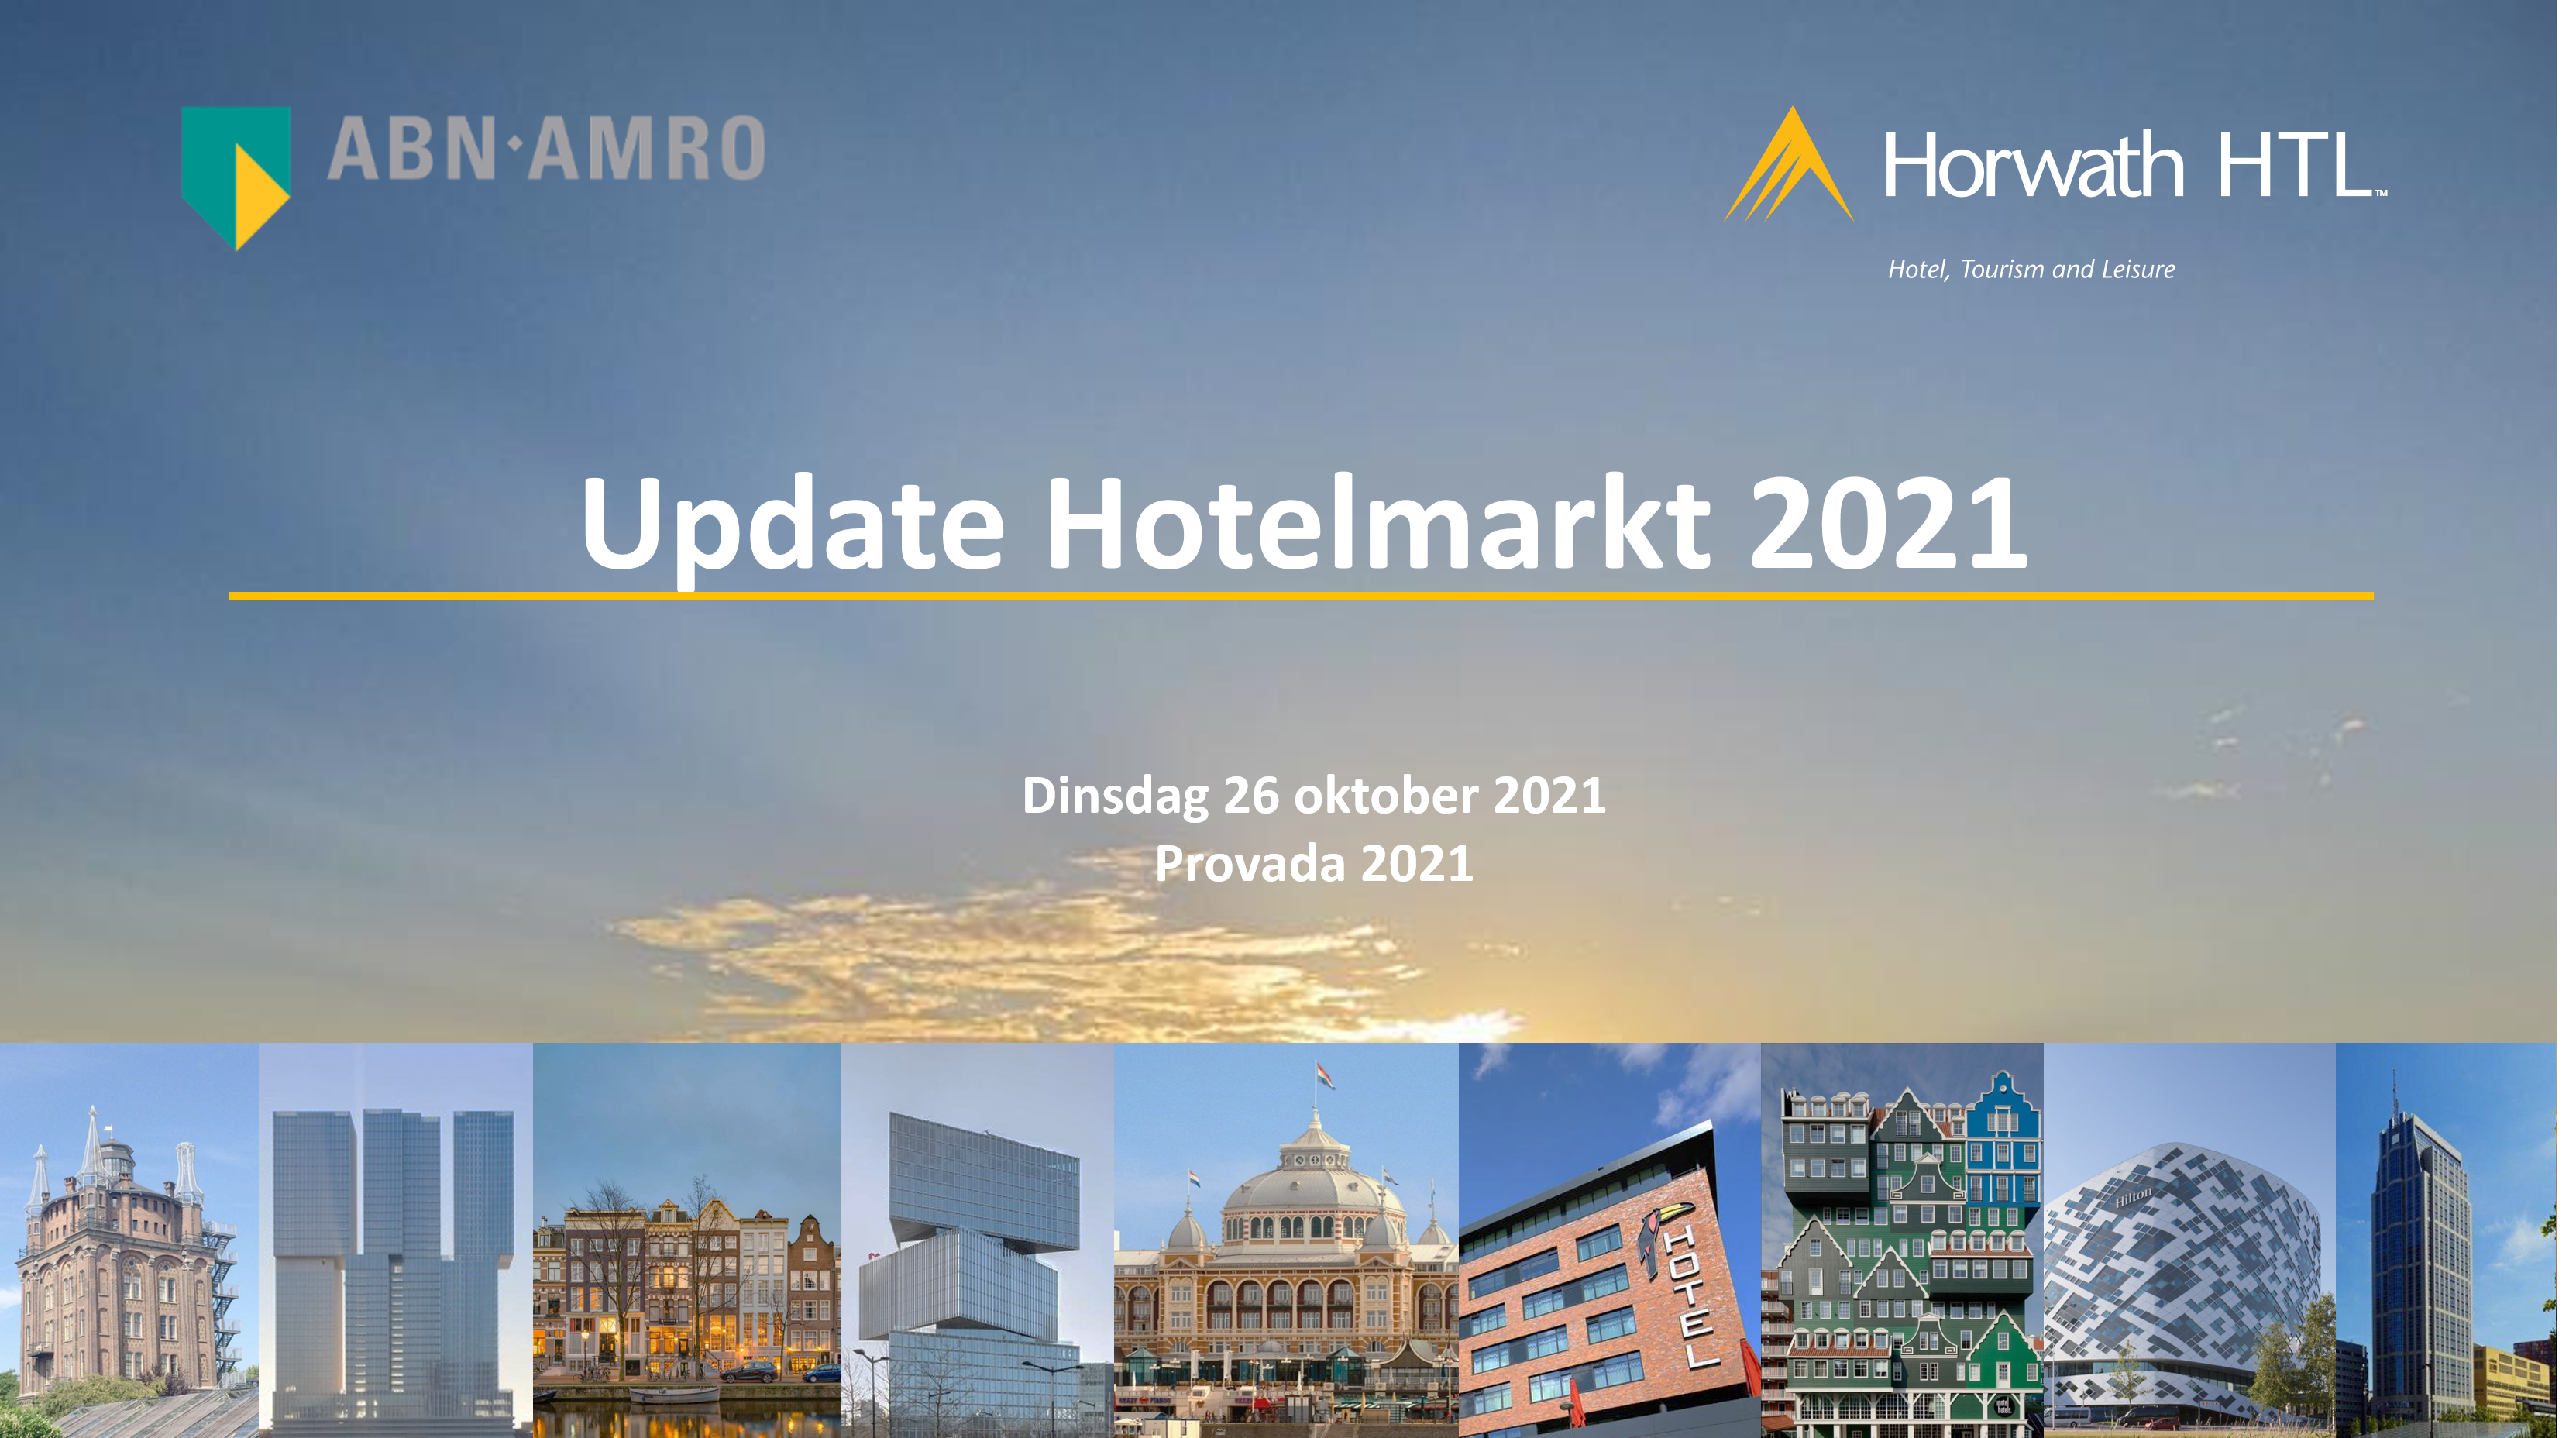 PROVADA: Update Hotelmarkt 2021